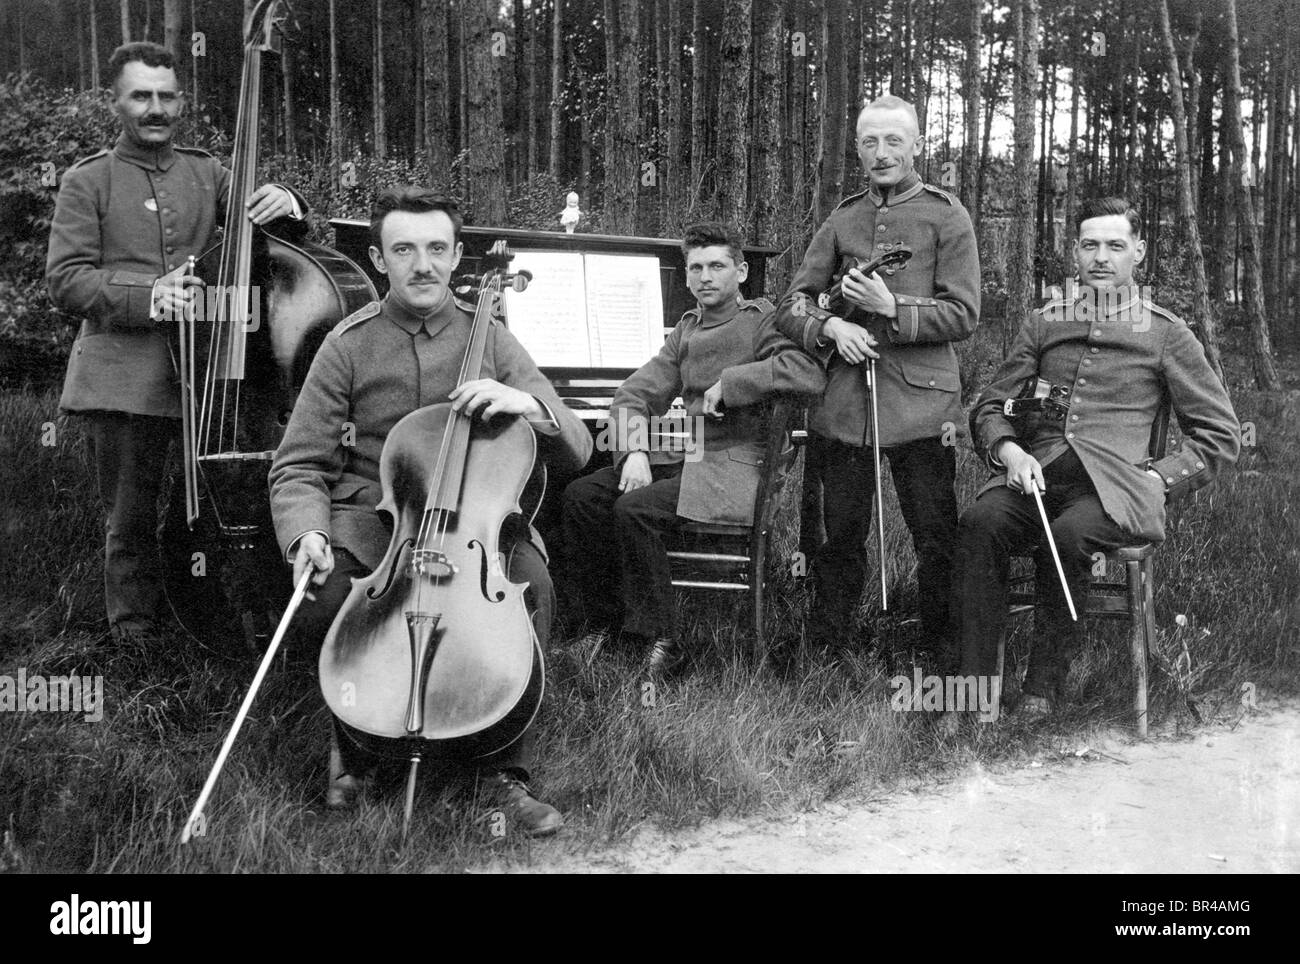 Imagen histórica, banda militar exterior, ca. 1926 Foto de stock